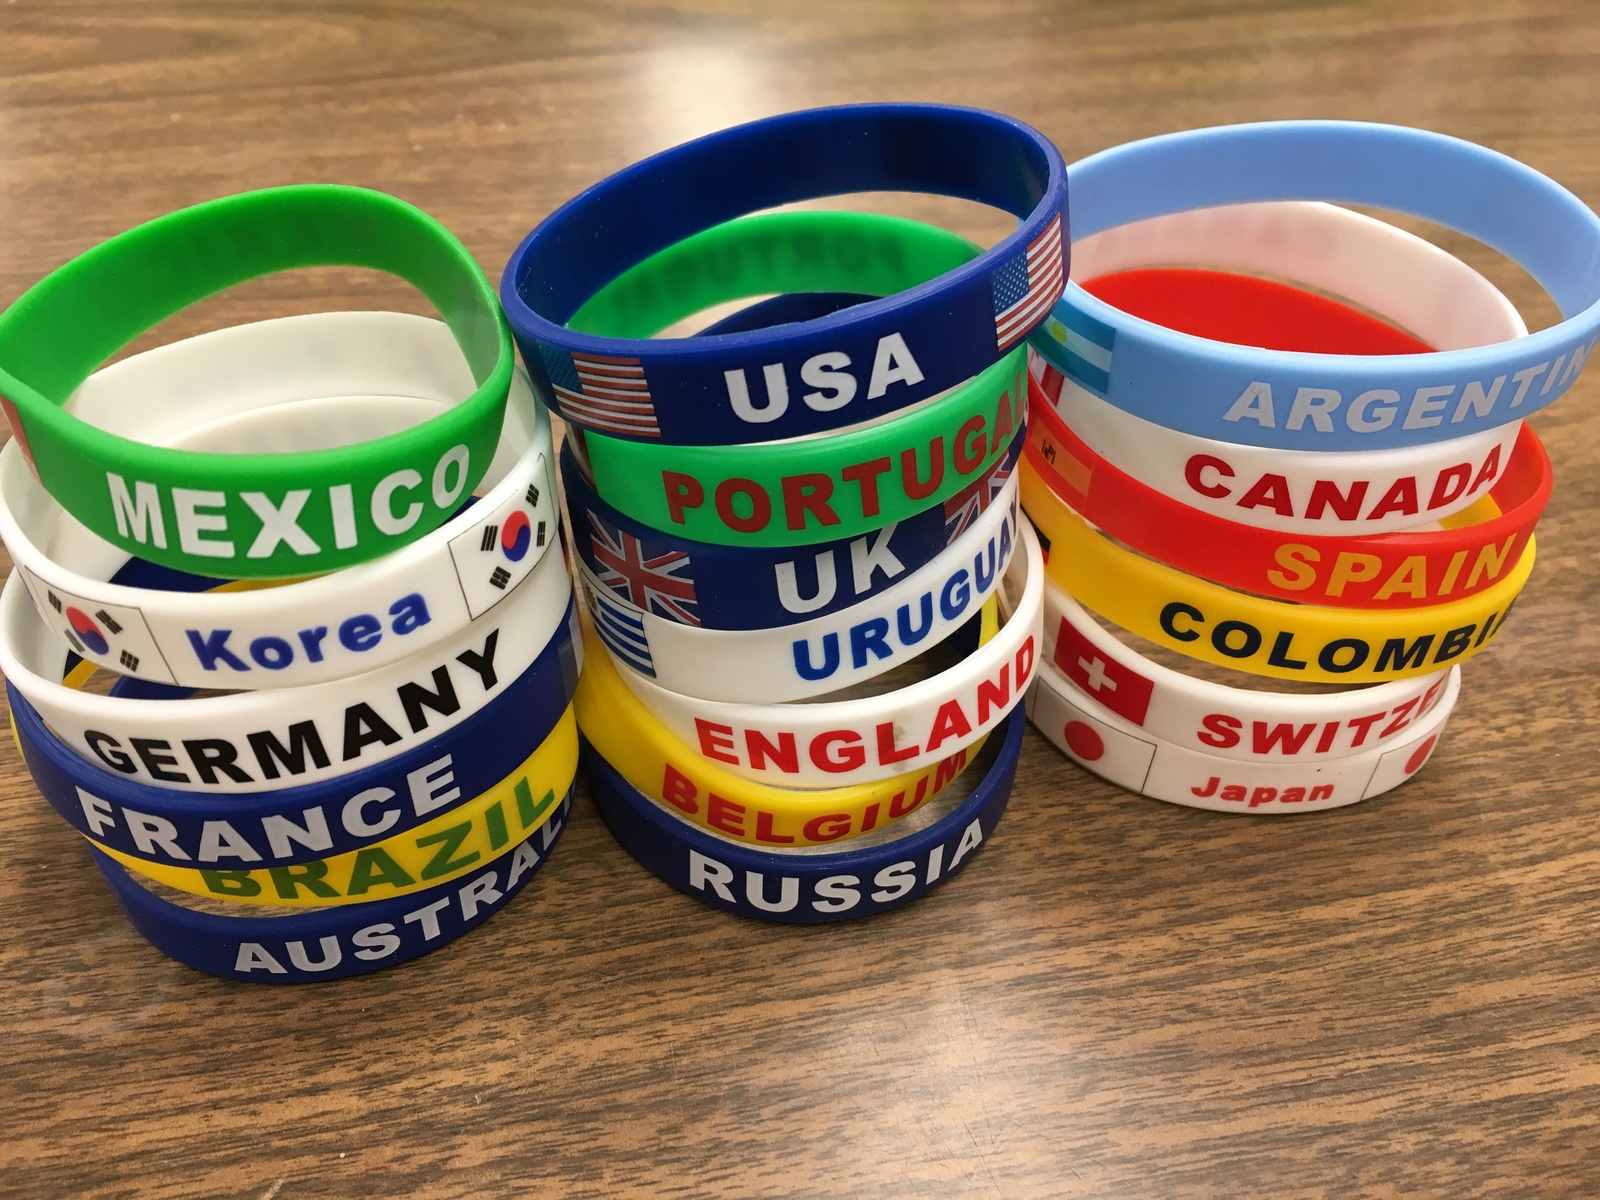 World Cup Soccer bracelets - $5.99 - $6.00